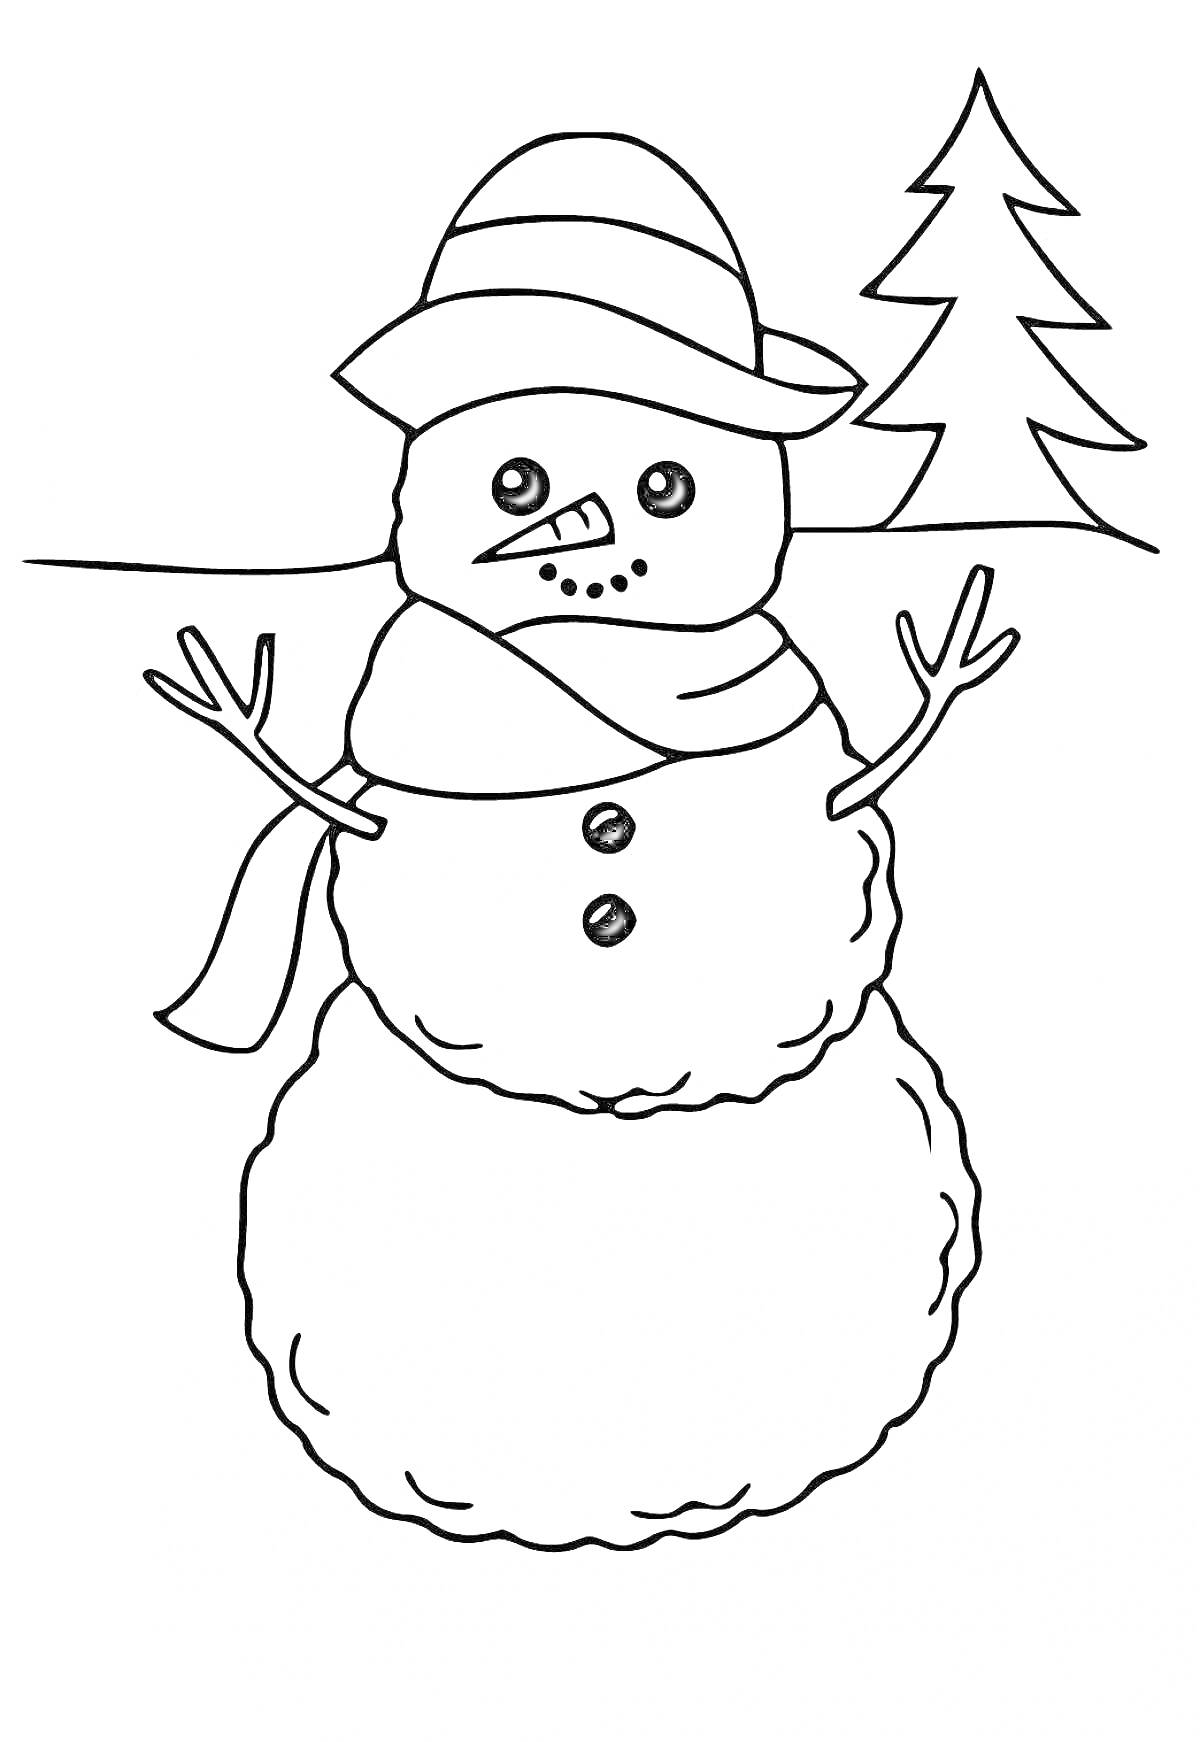 Раскраска Снеговик с деревом, шапкой и шарфом